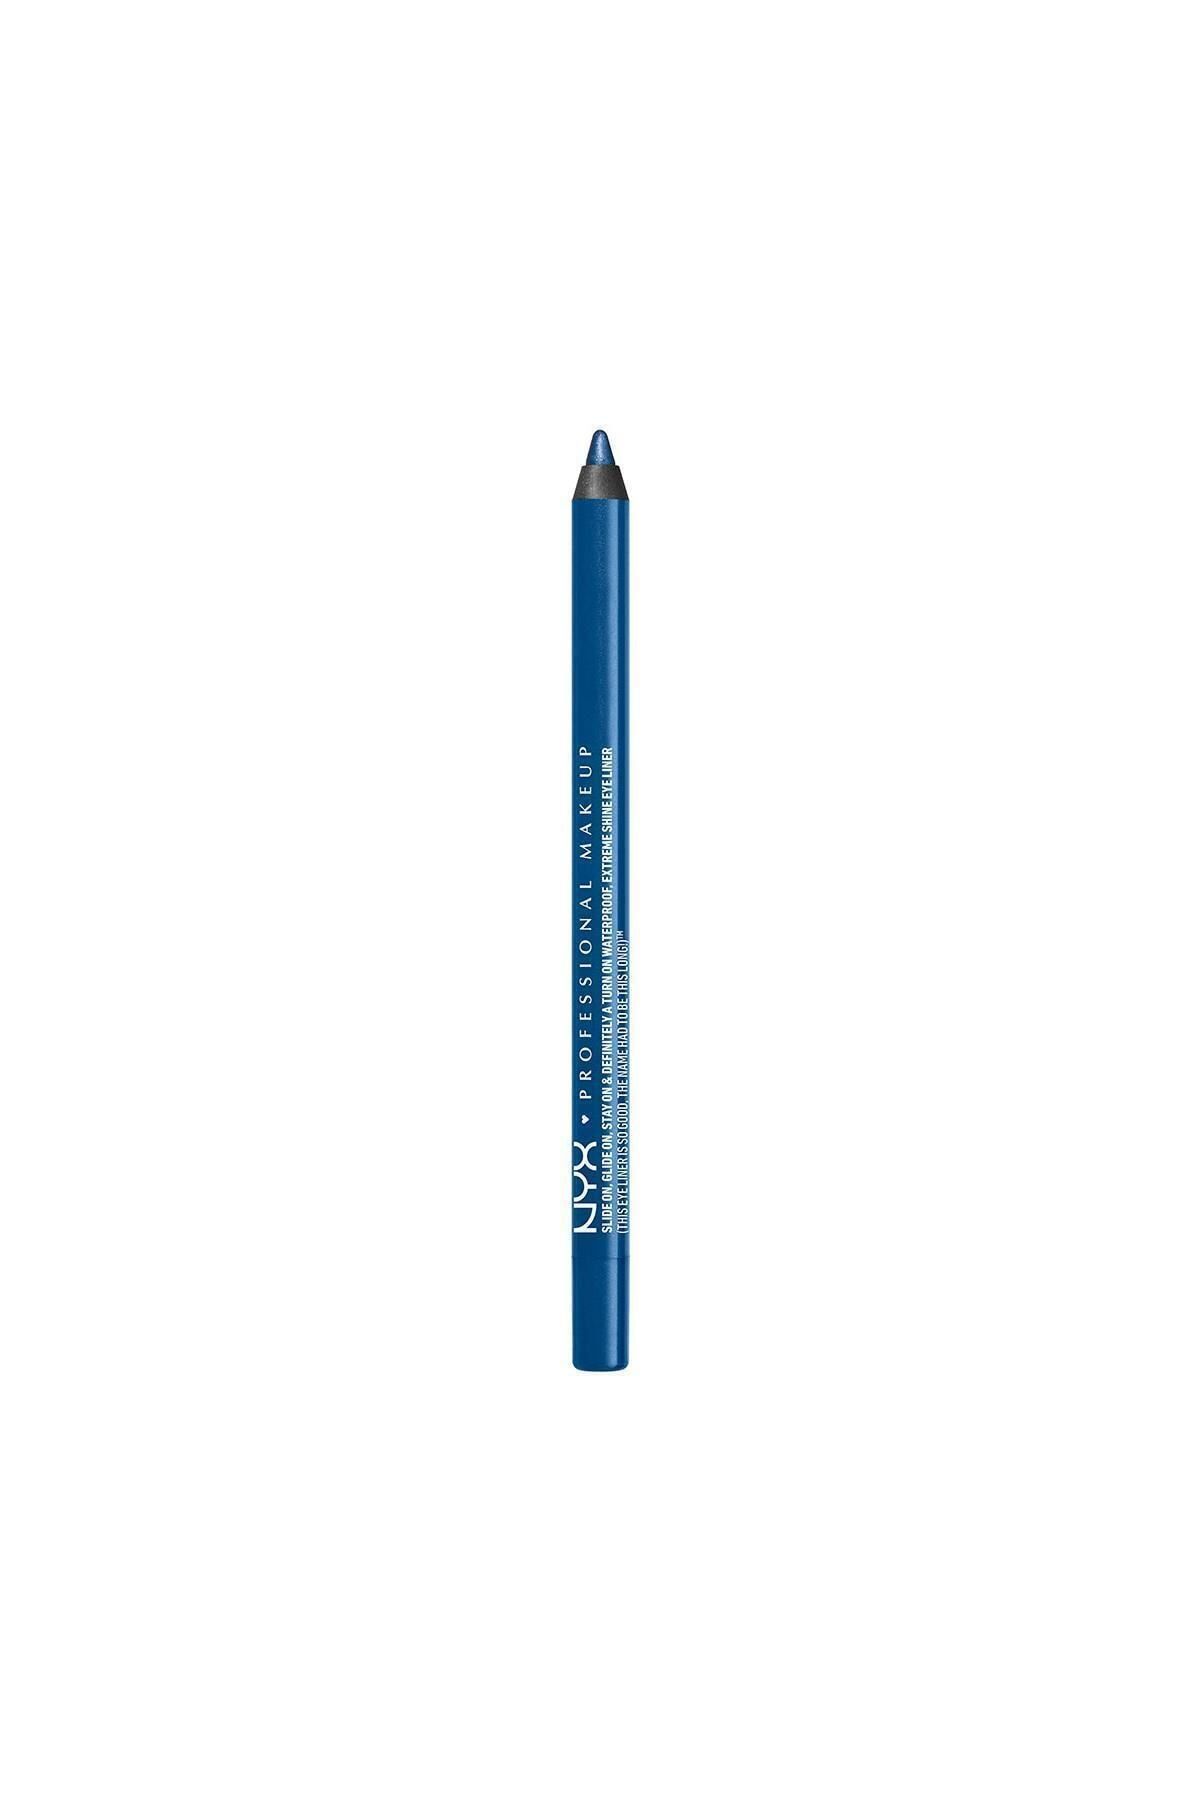 NYX Professional Makeup Mavi Göz Kalemi - Slide on Eye Pencil Sunrise Blue 6 g 800897141295